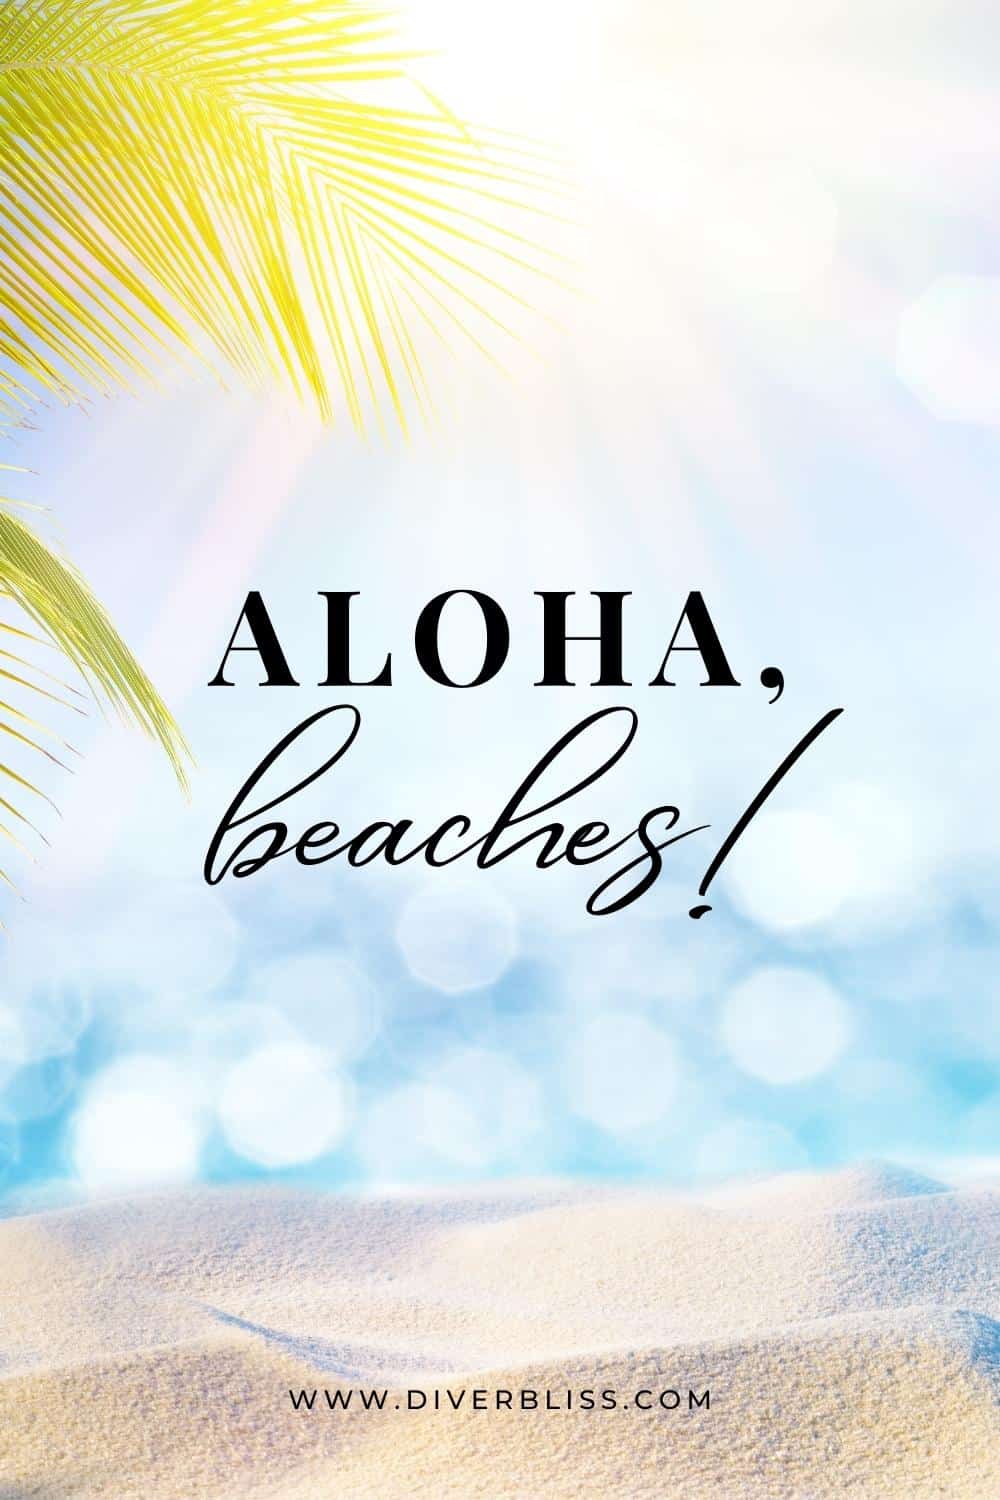 Aloha, beaches! 